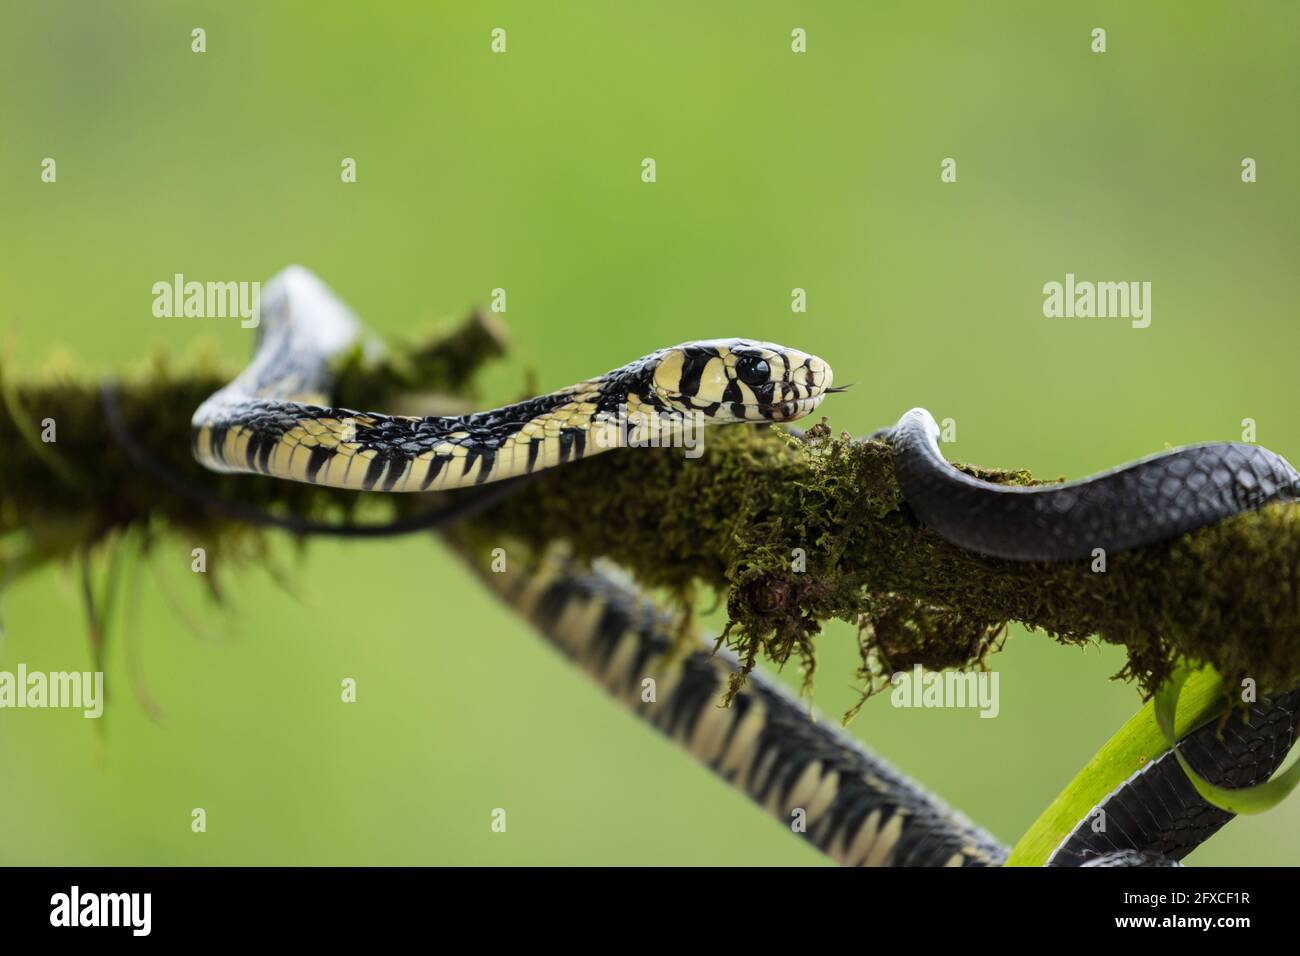 Le serpent de rat de tigre, Spilotes pullatus, est un serpent non venimeux trouvé du Mexique au centre de l'Amérique du Sud. Il peut atteindre 14 pieds de longueur. Banque D'Images